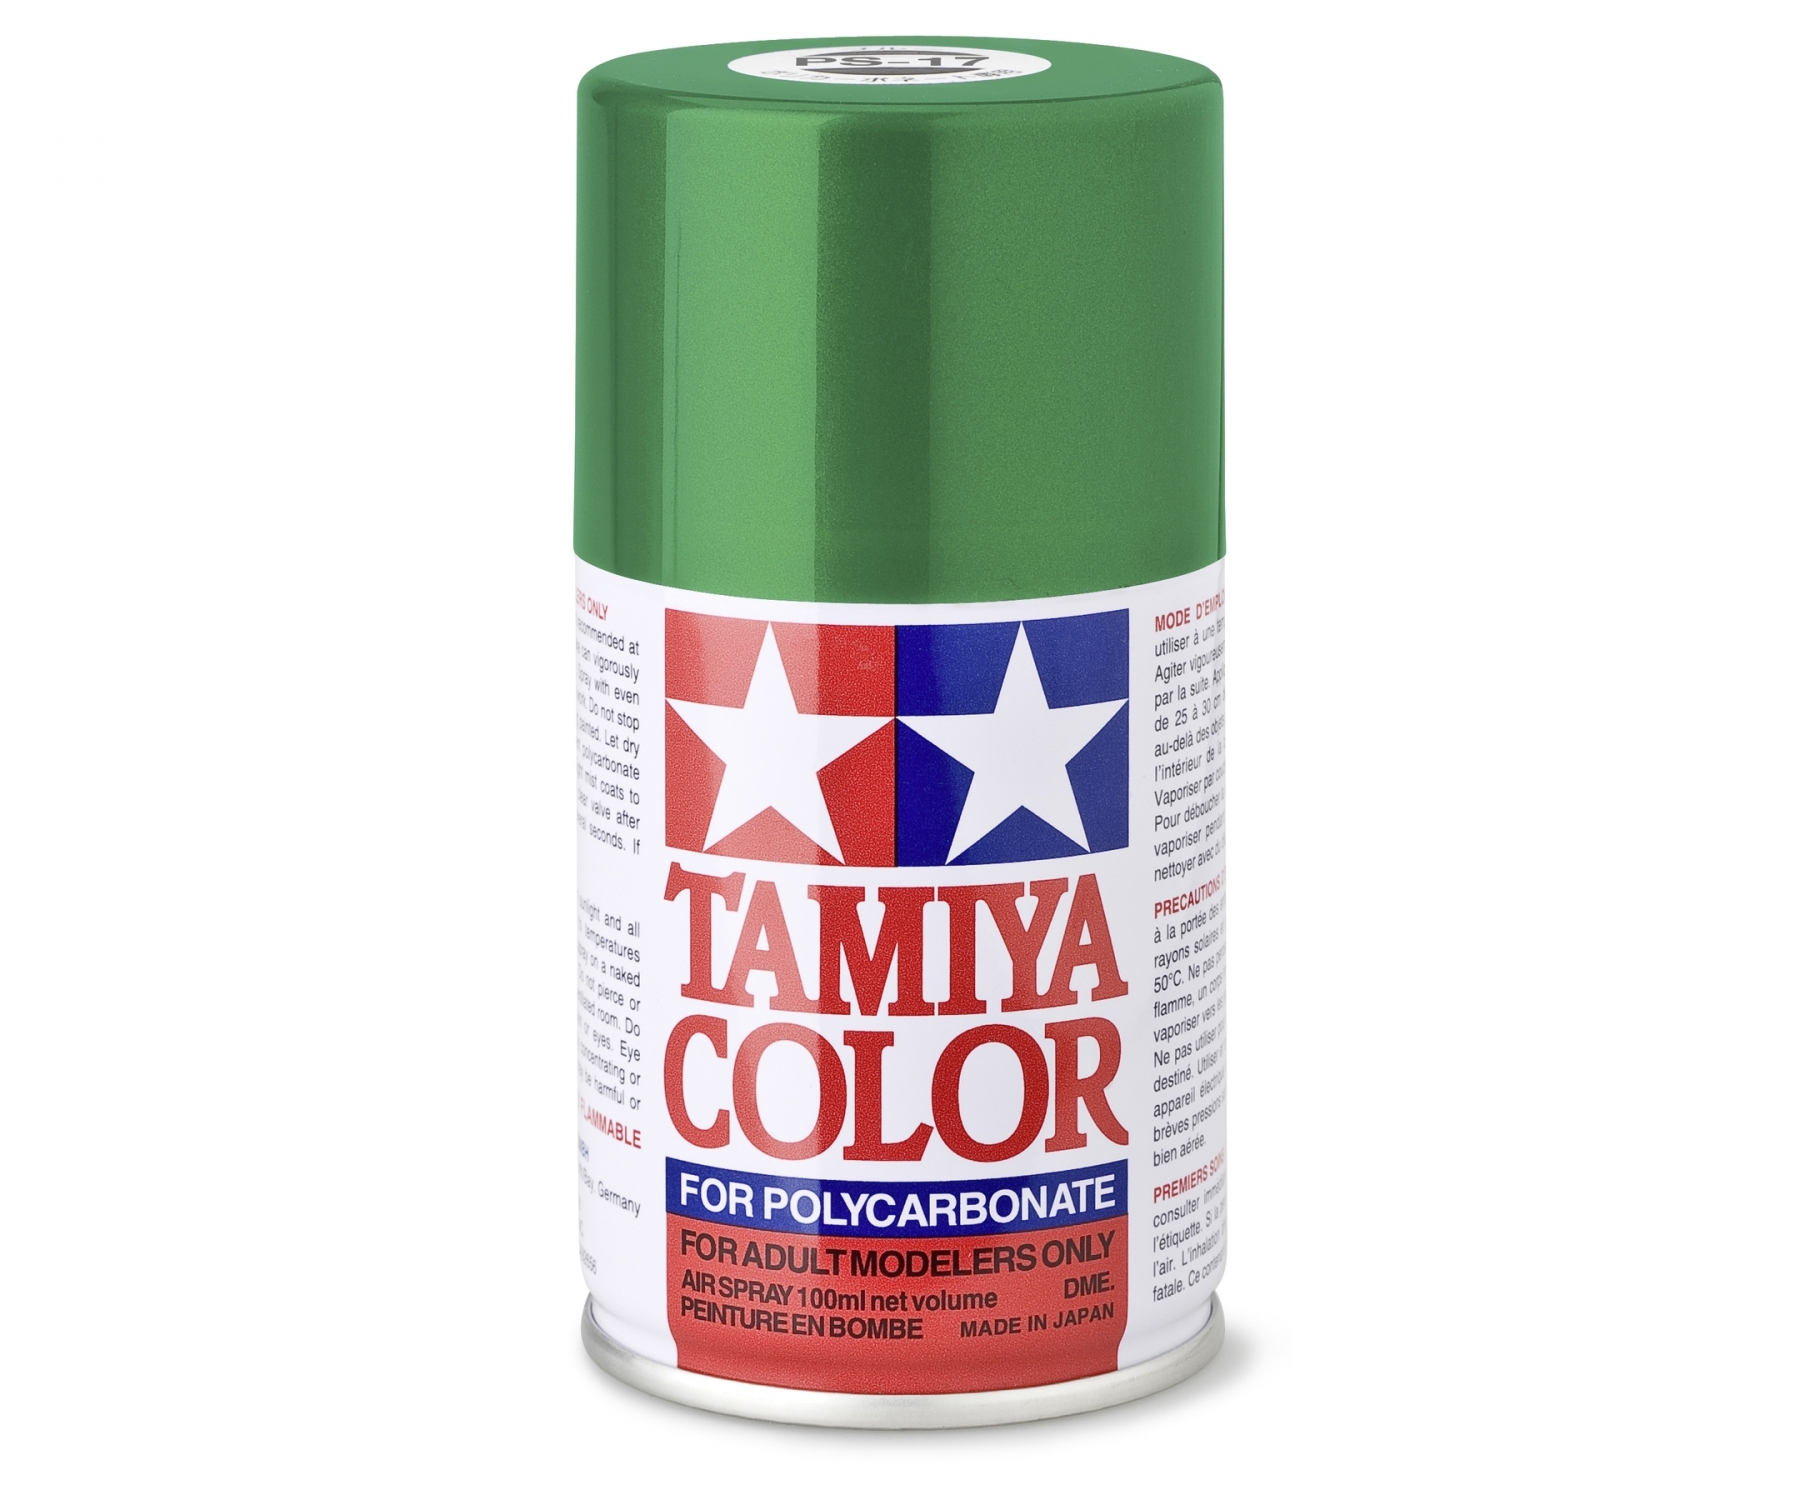 Tamiya Color Lexanspray Grün (metallic) PS-17 100 ml Spraydose (L=109,90€)